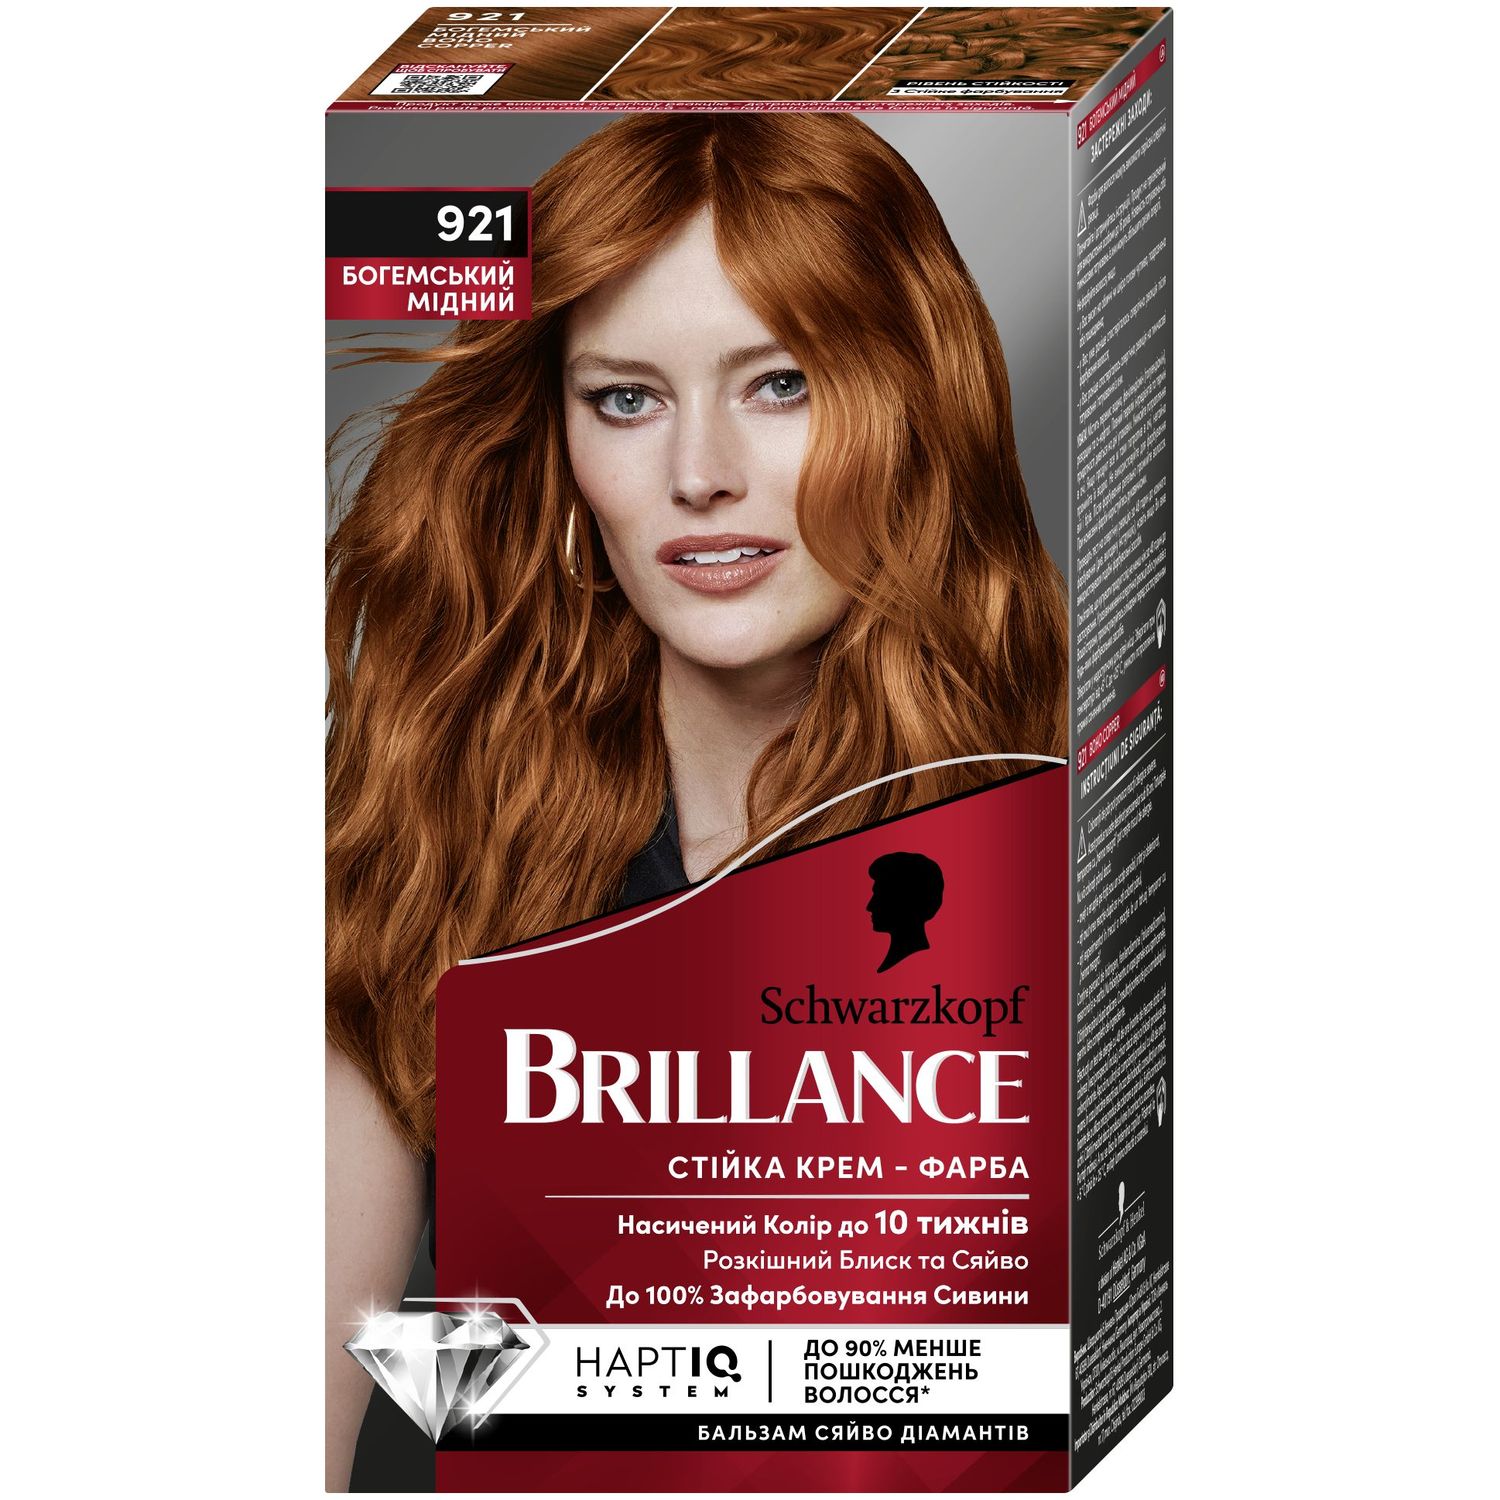 Фарба для волосся Brillance, відтінок 921 Богемський мідний, 142,5 мл - фото 1